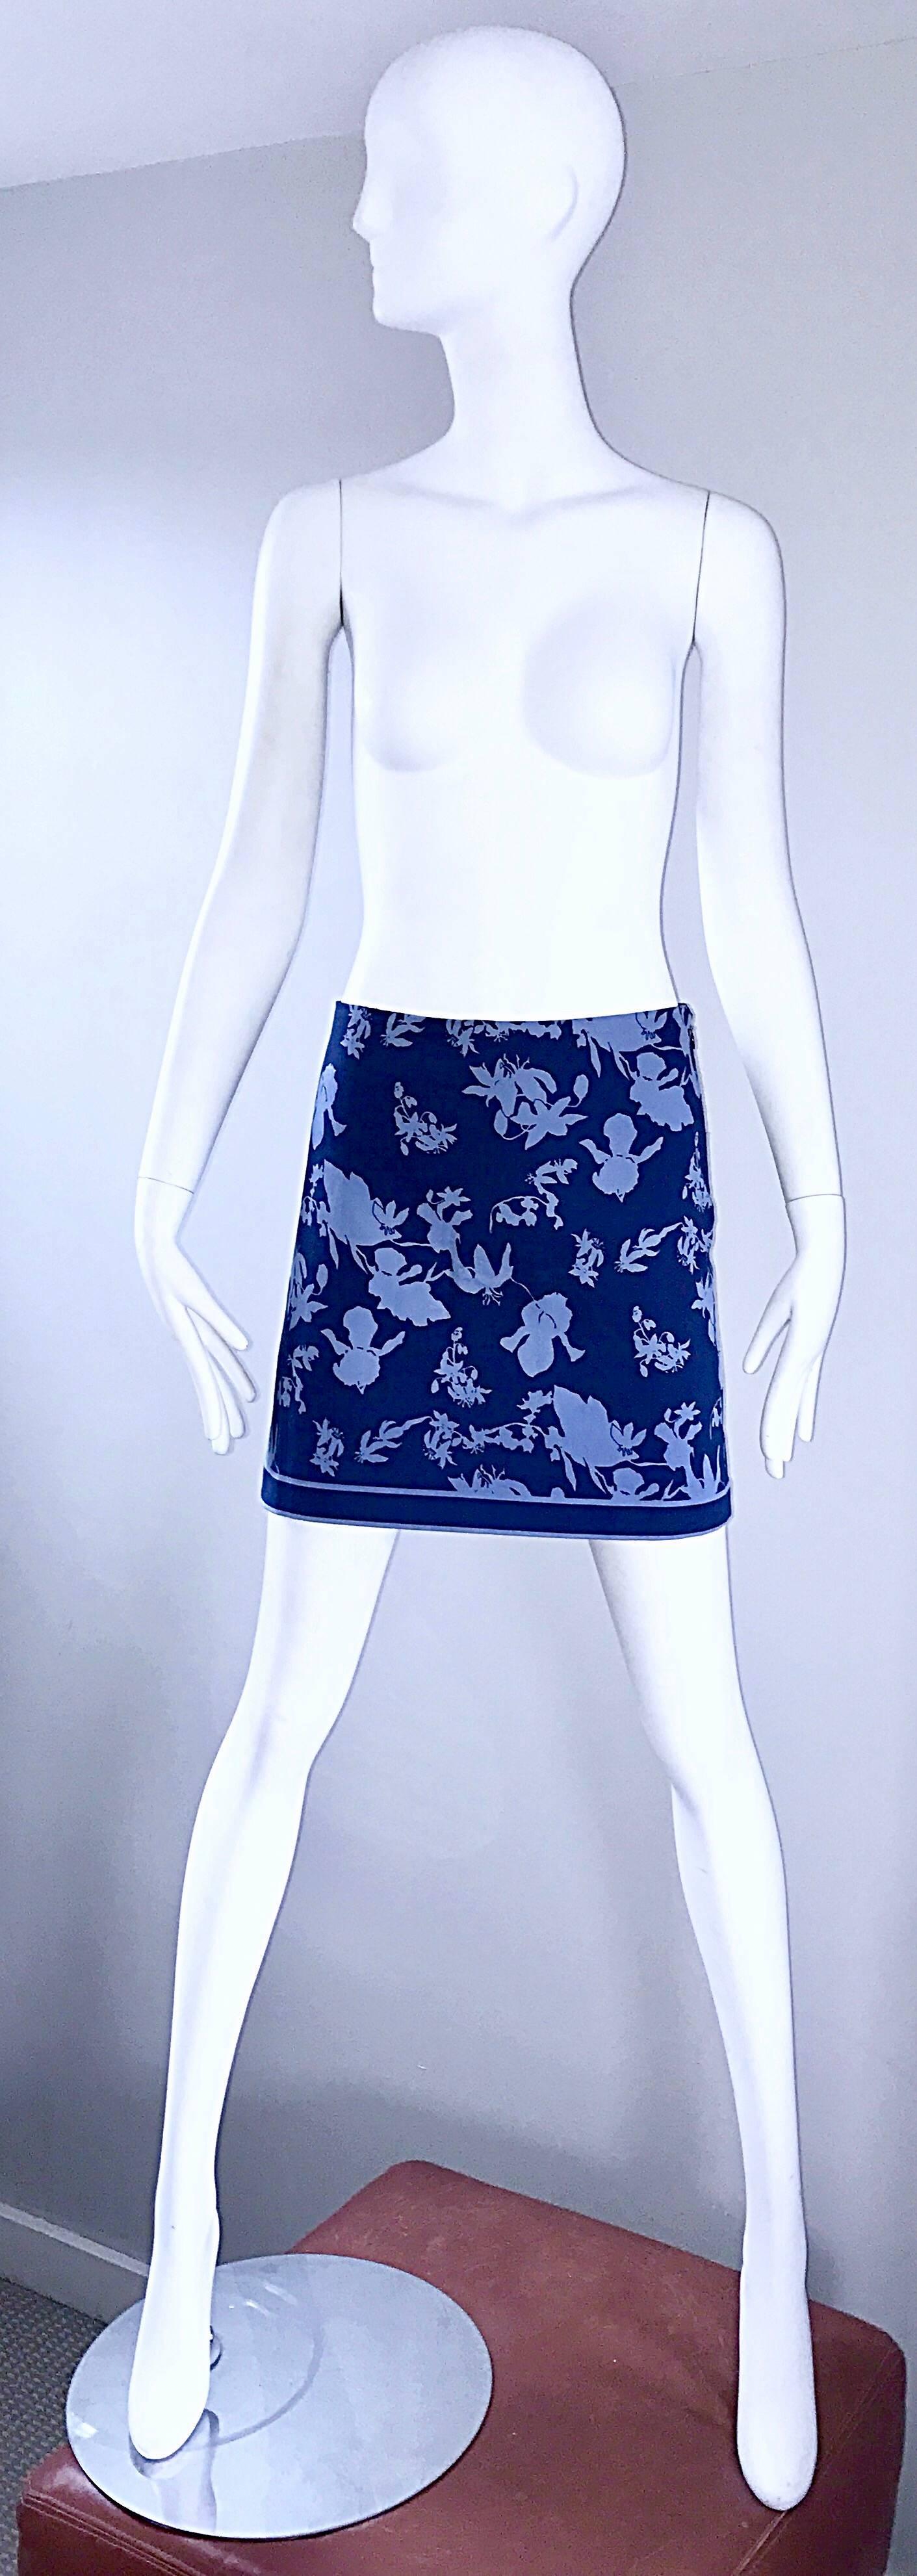 Chic marque nouvelle MICHAEL KORS COLLECTION taille 8 tropical nautical mini skirt ! En coton doux bleu marine, avec un imprimé de fleurs et de feuillages bleu pâle. Rayure à l'ourlet. Elle est basse sur les hanches et rend hommage aux années